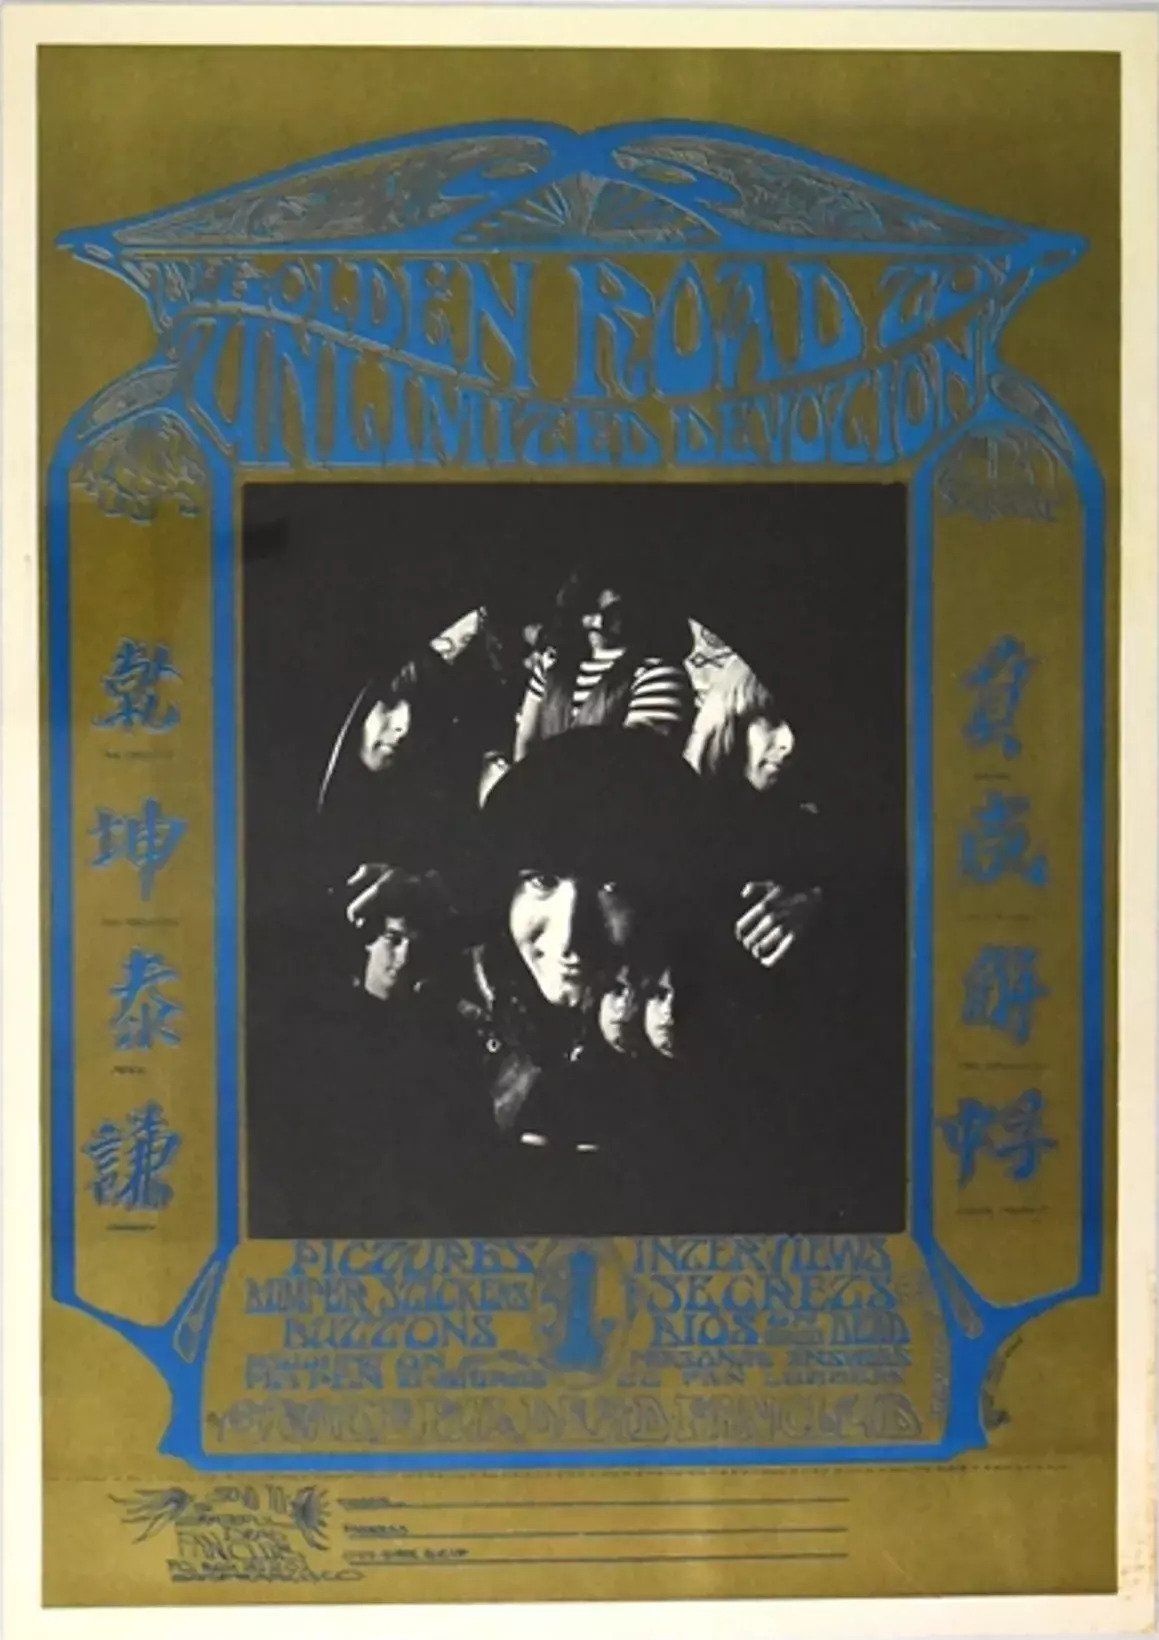 AOR-2.192-OP-1 Concert Poster